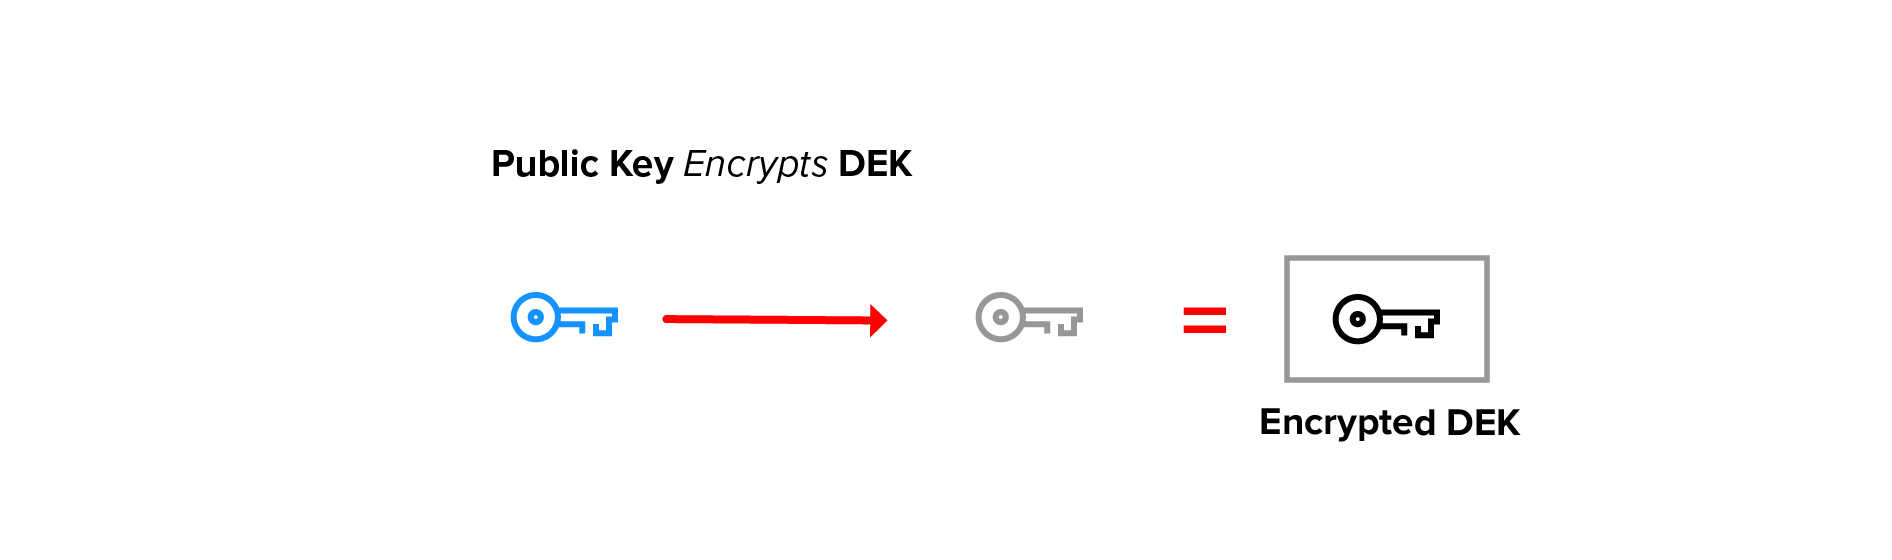 Public key encrypts DEK